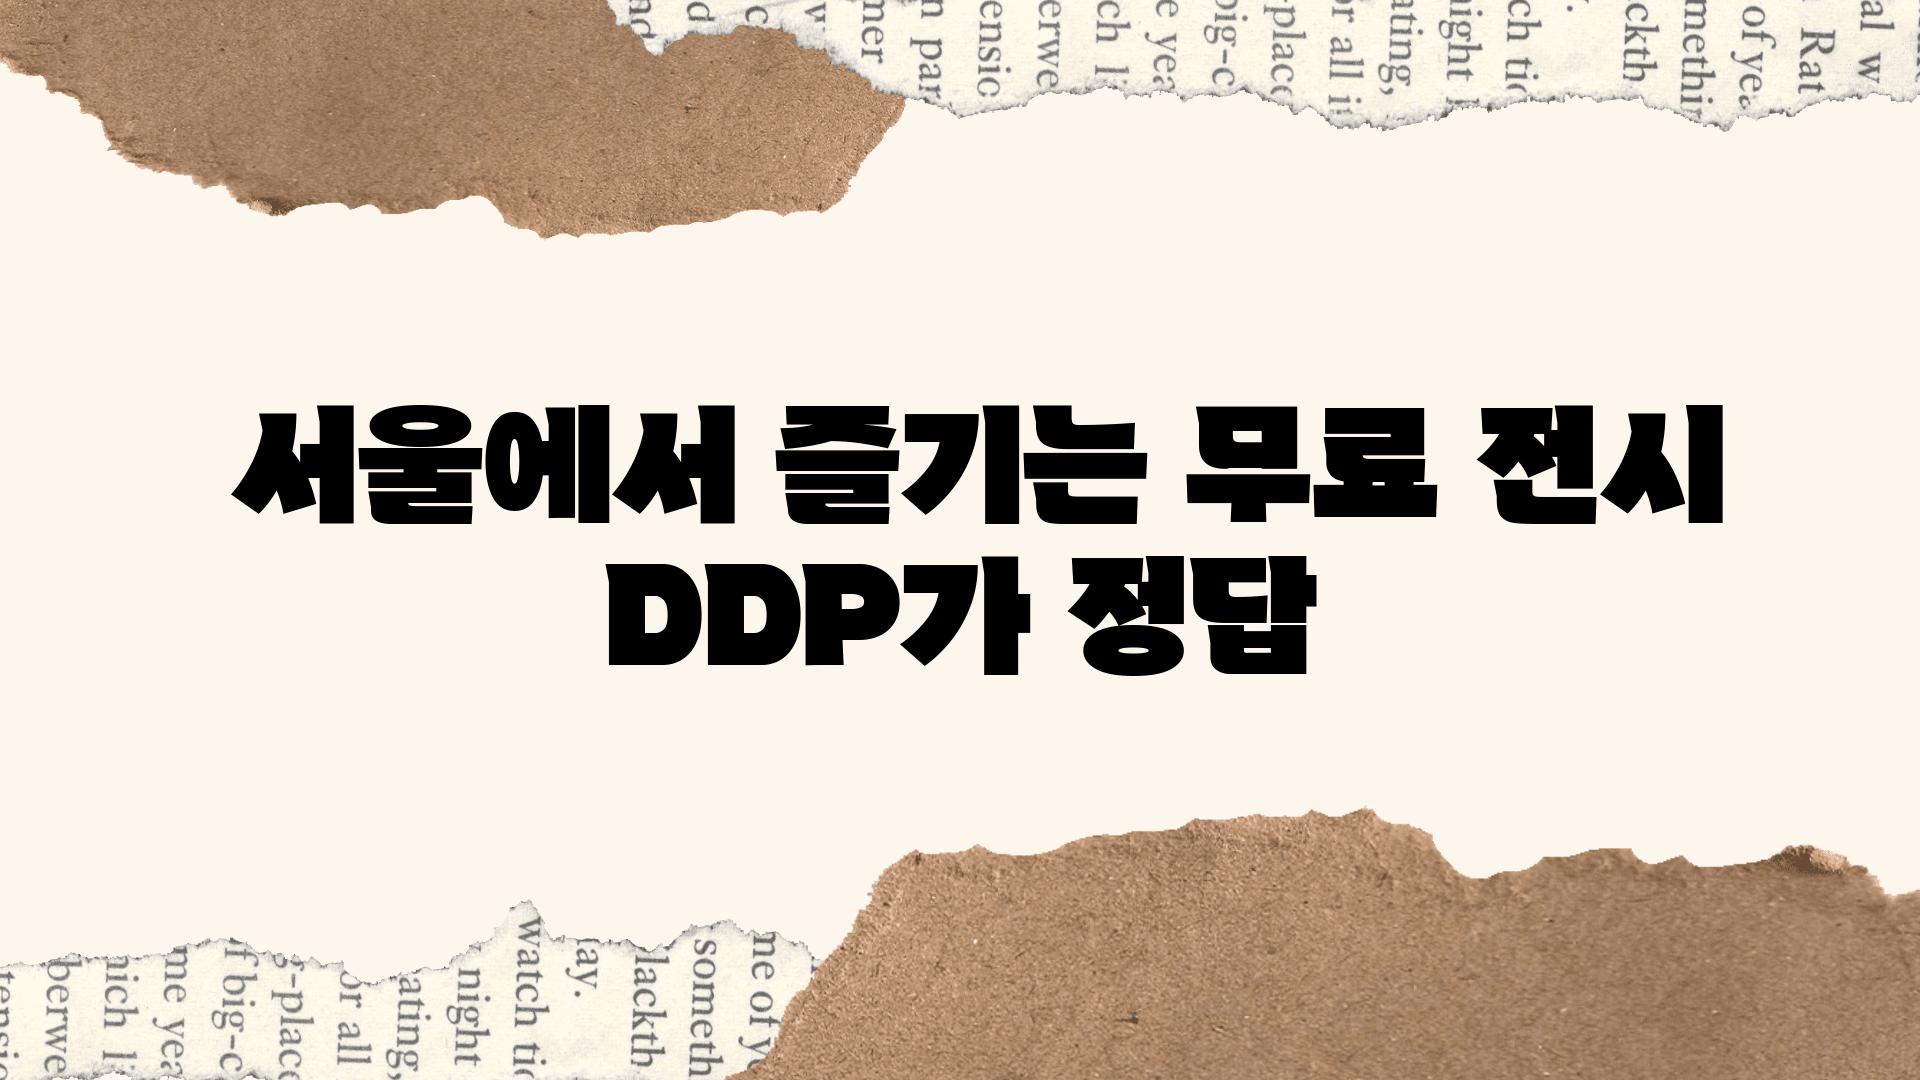  서울에서 즐기는 무료 전시 DDP가 정답